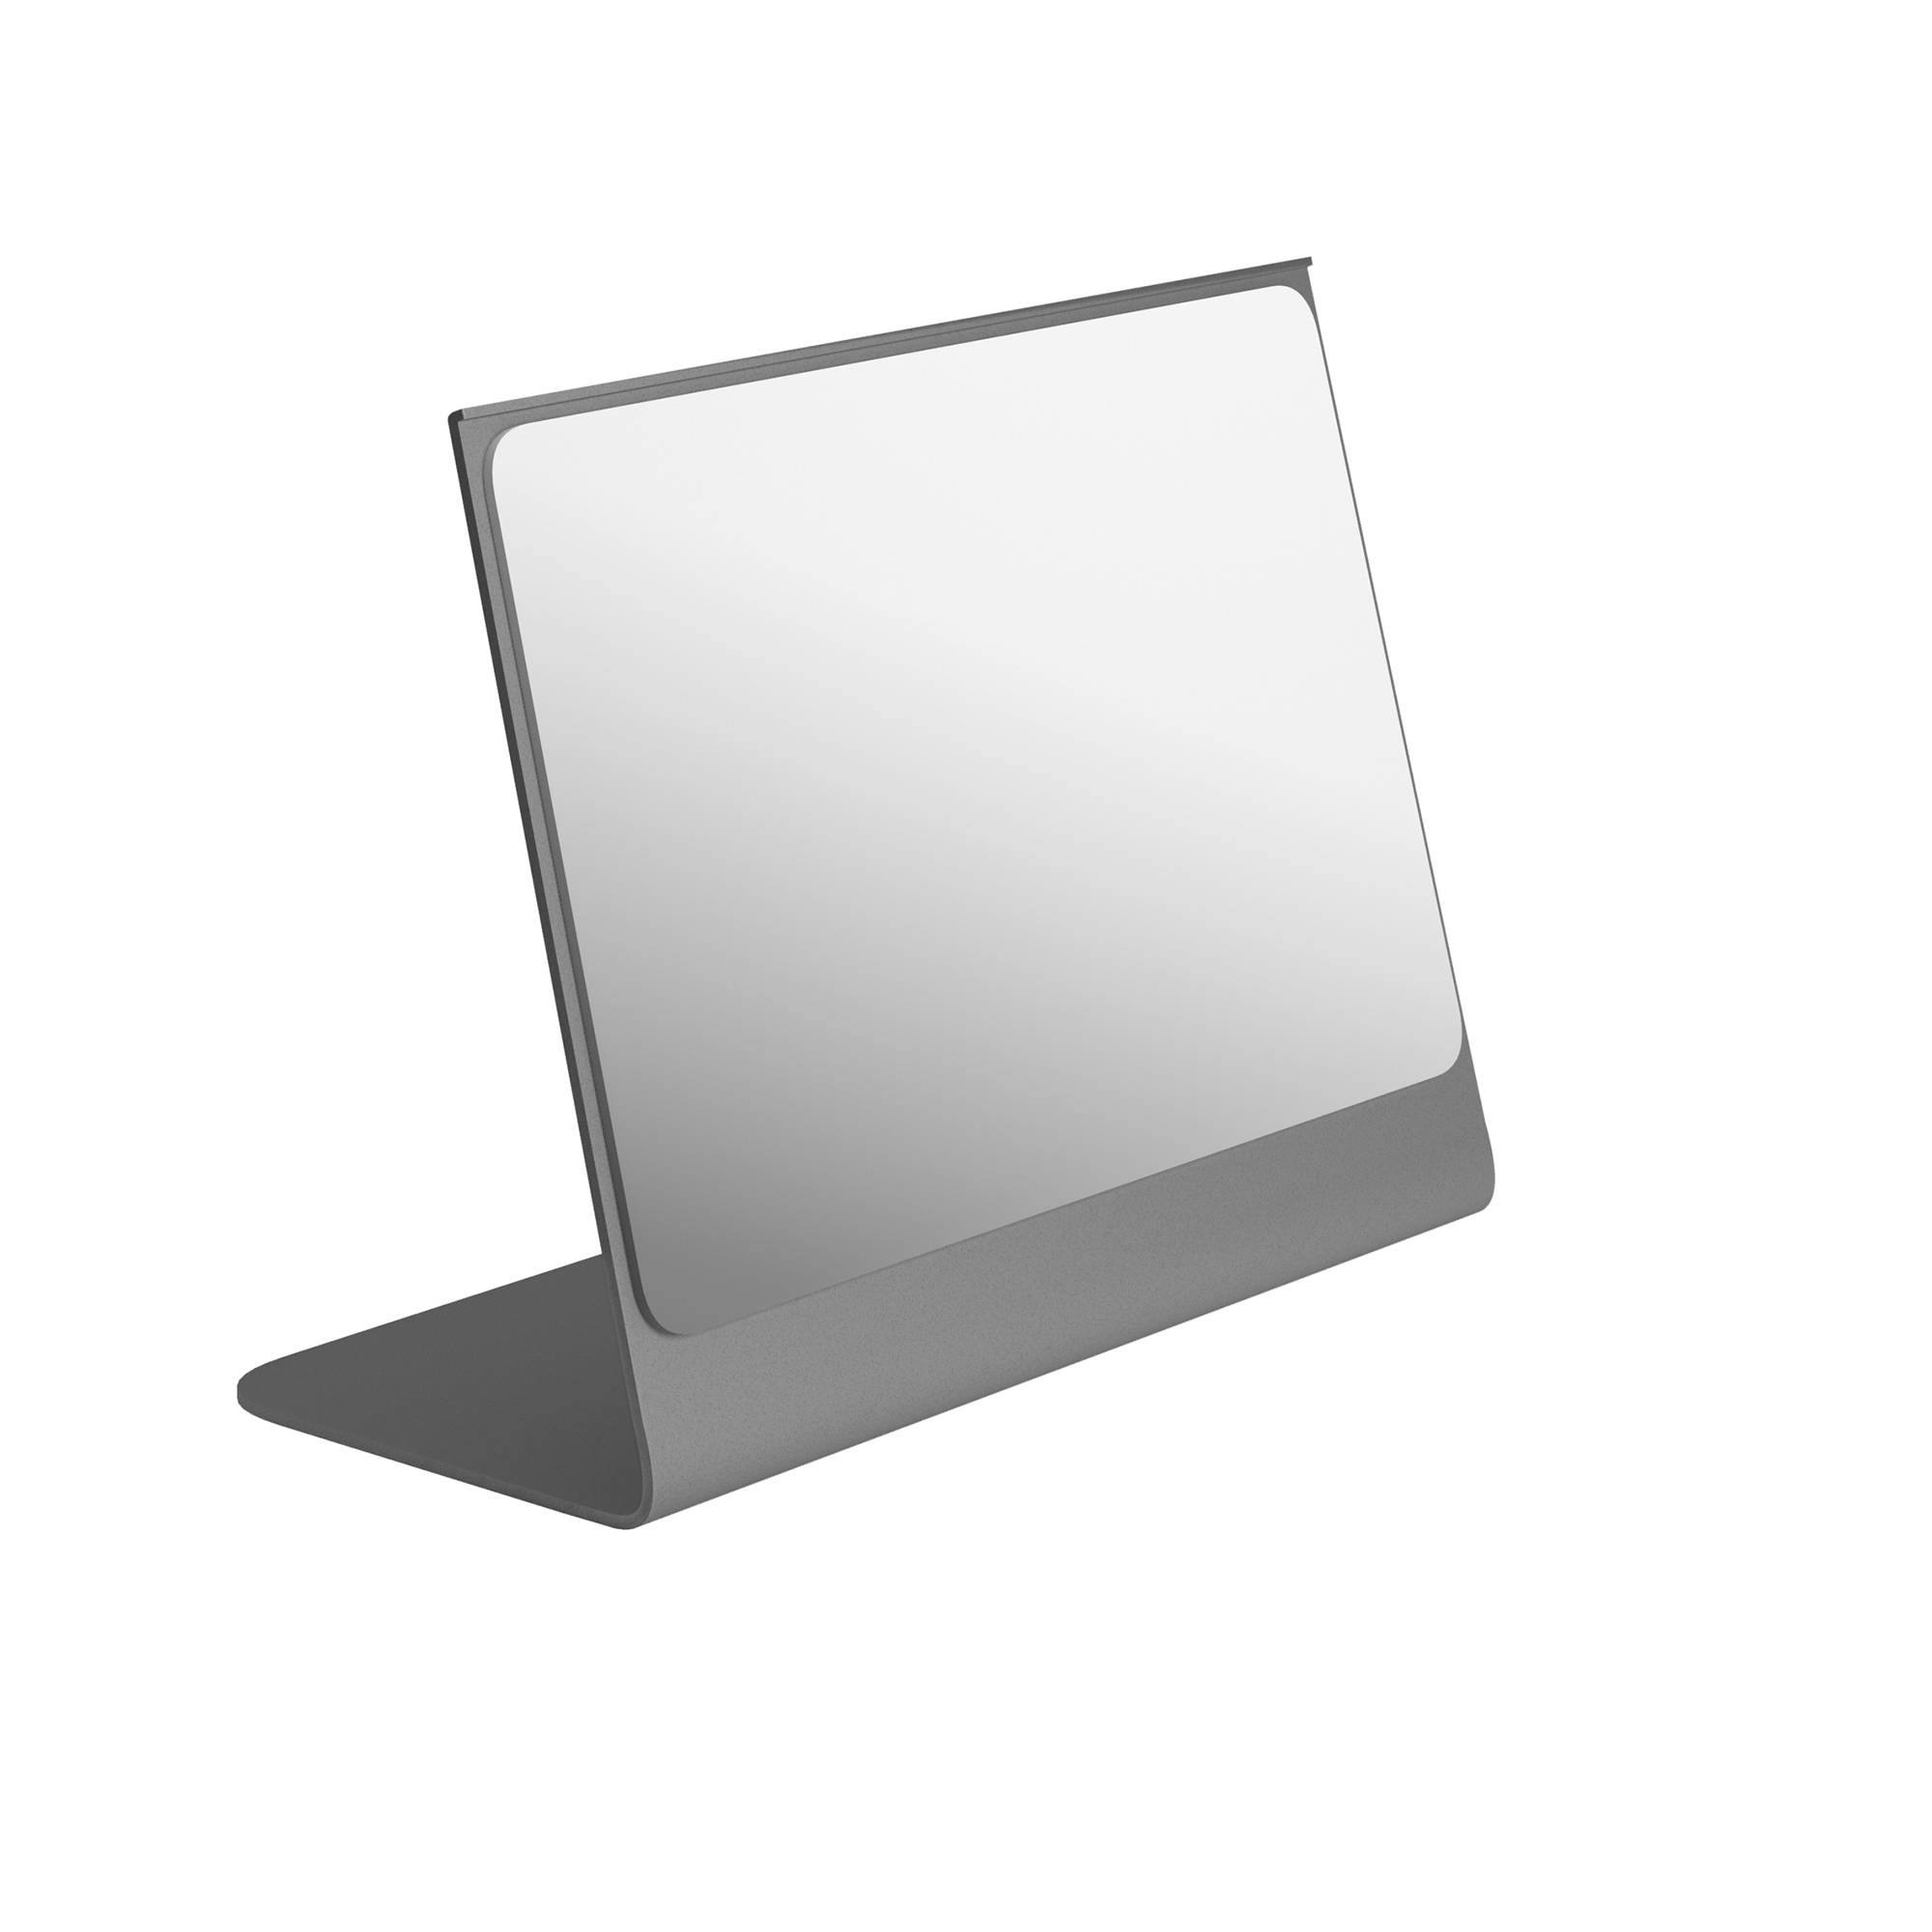 Καθρέπτης Επιτραπέζιος Ανοξείδωτος Matt Concrete Grey Pam & Co 20x10x18εκ. 2015-163 (Υλικό: Ανοξείδωτο, Χρώμα: Γκρι) - Pam & Co - 2015-163